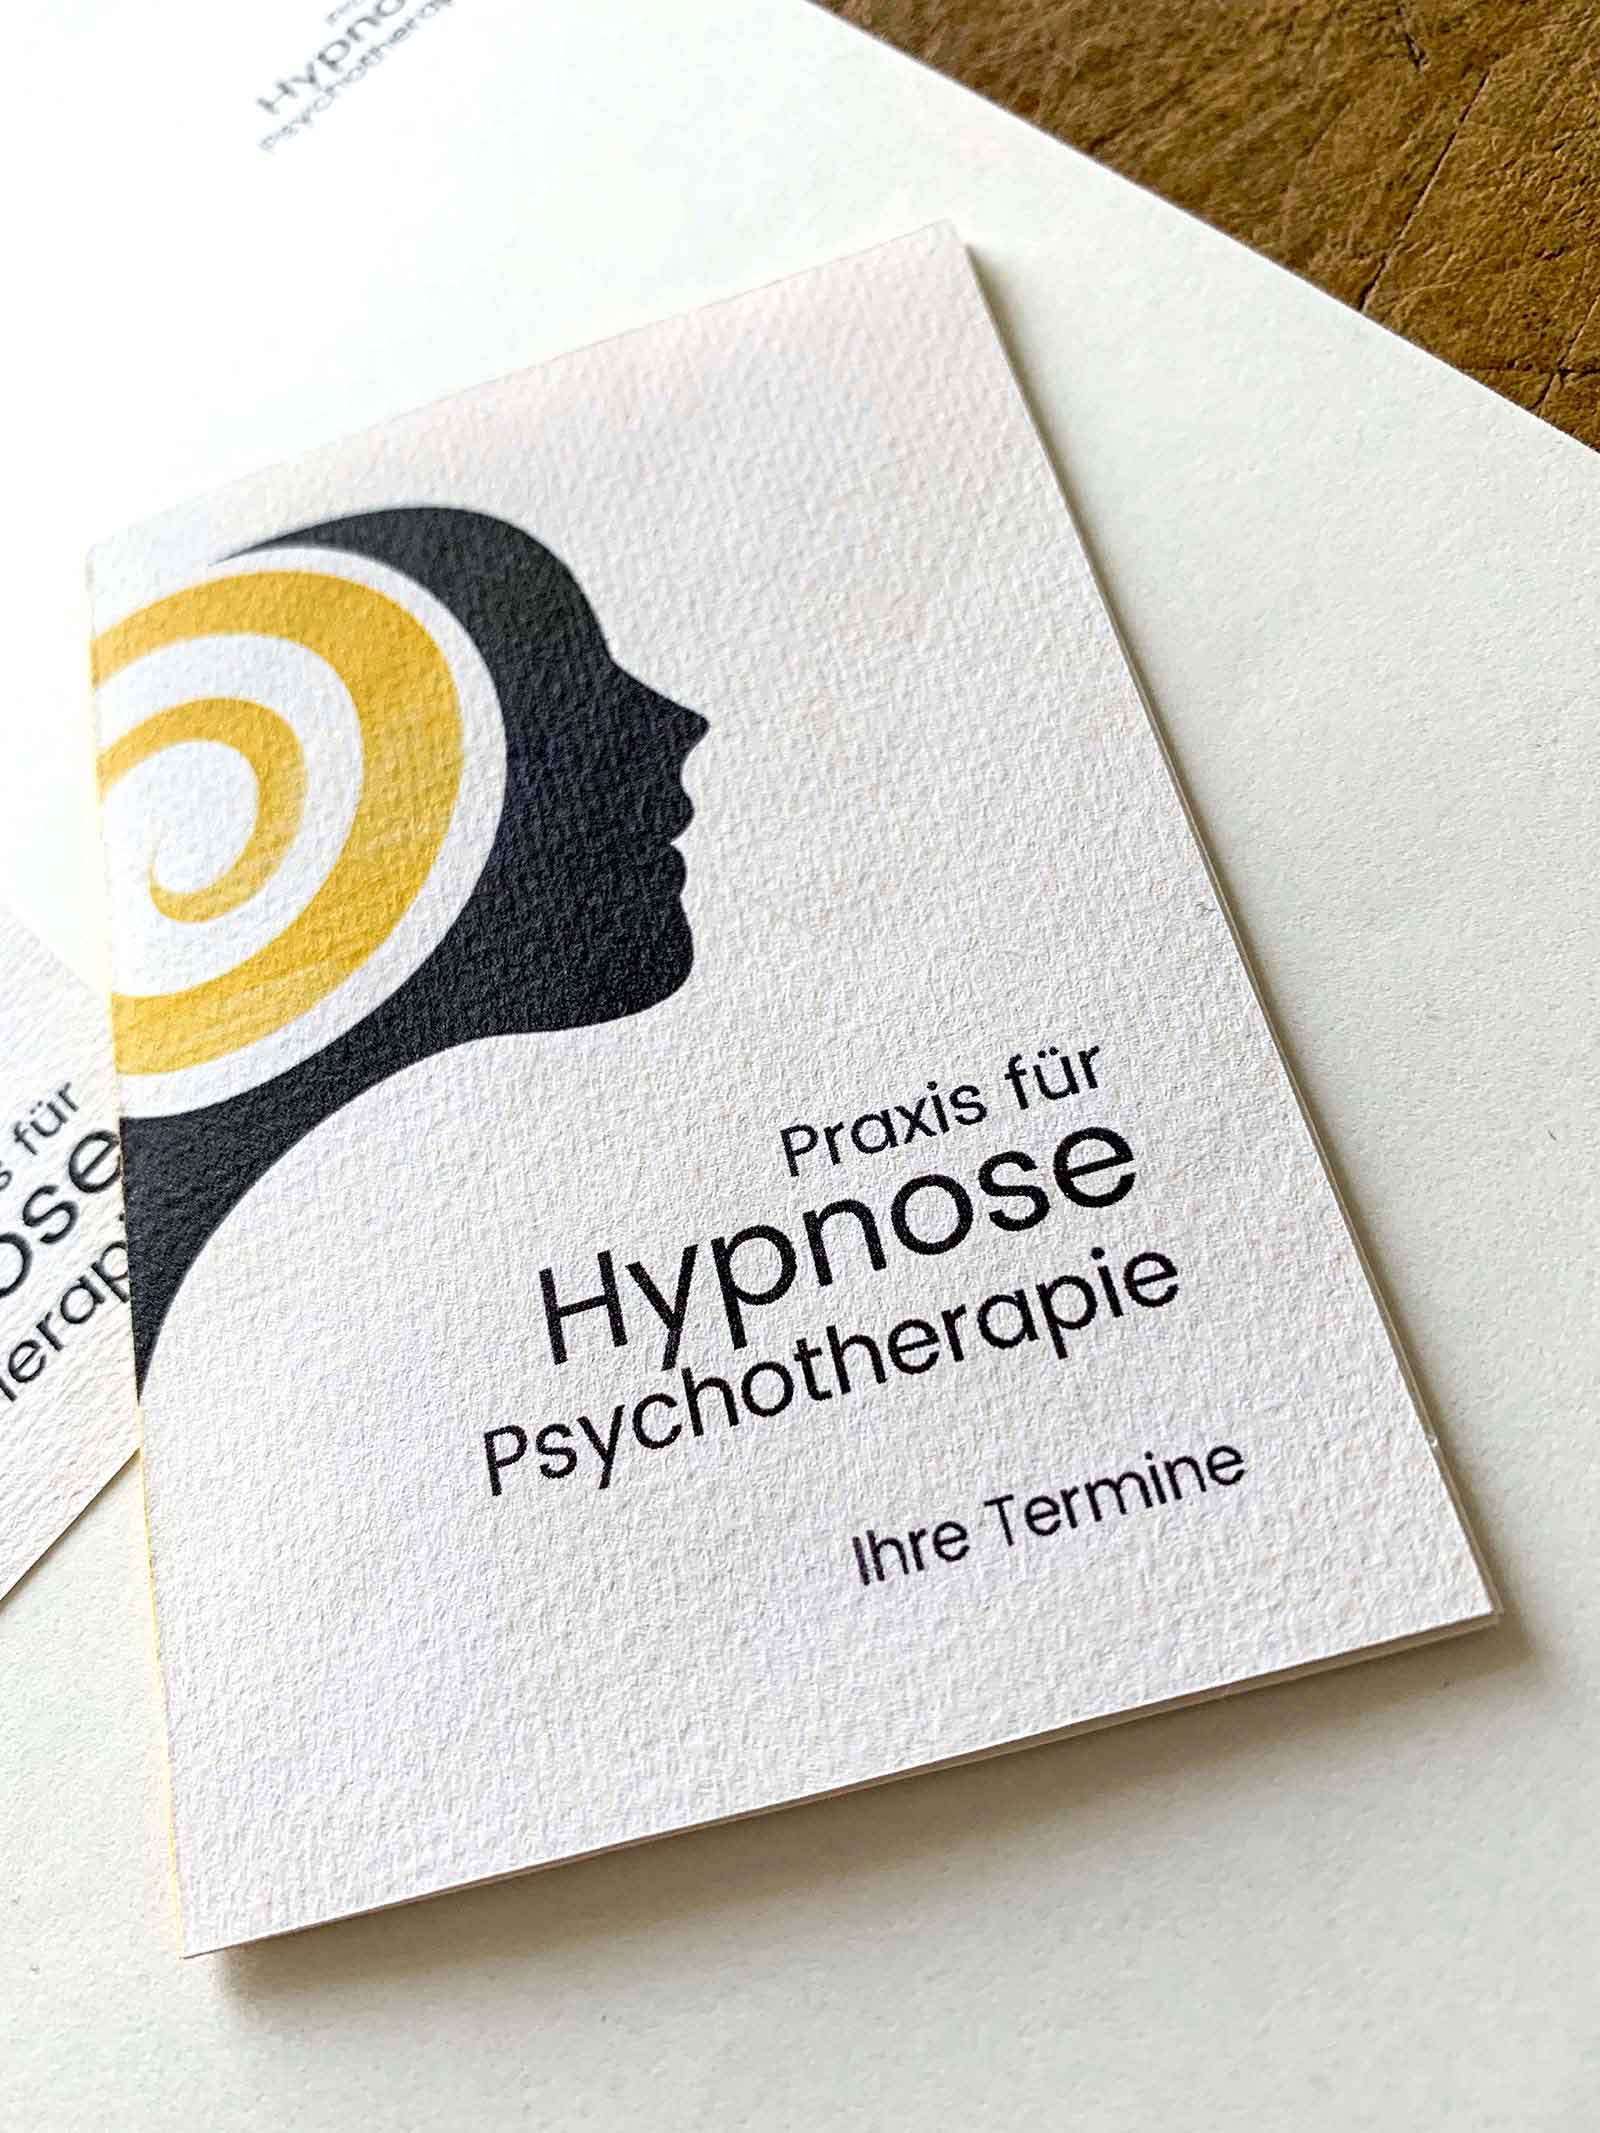 Geschäftsdrucksorten für Ruth Paul / Hypnose-Psychotherapie